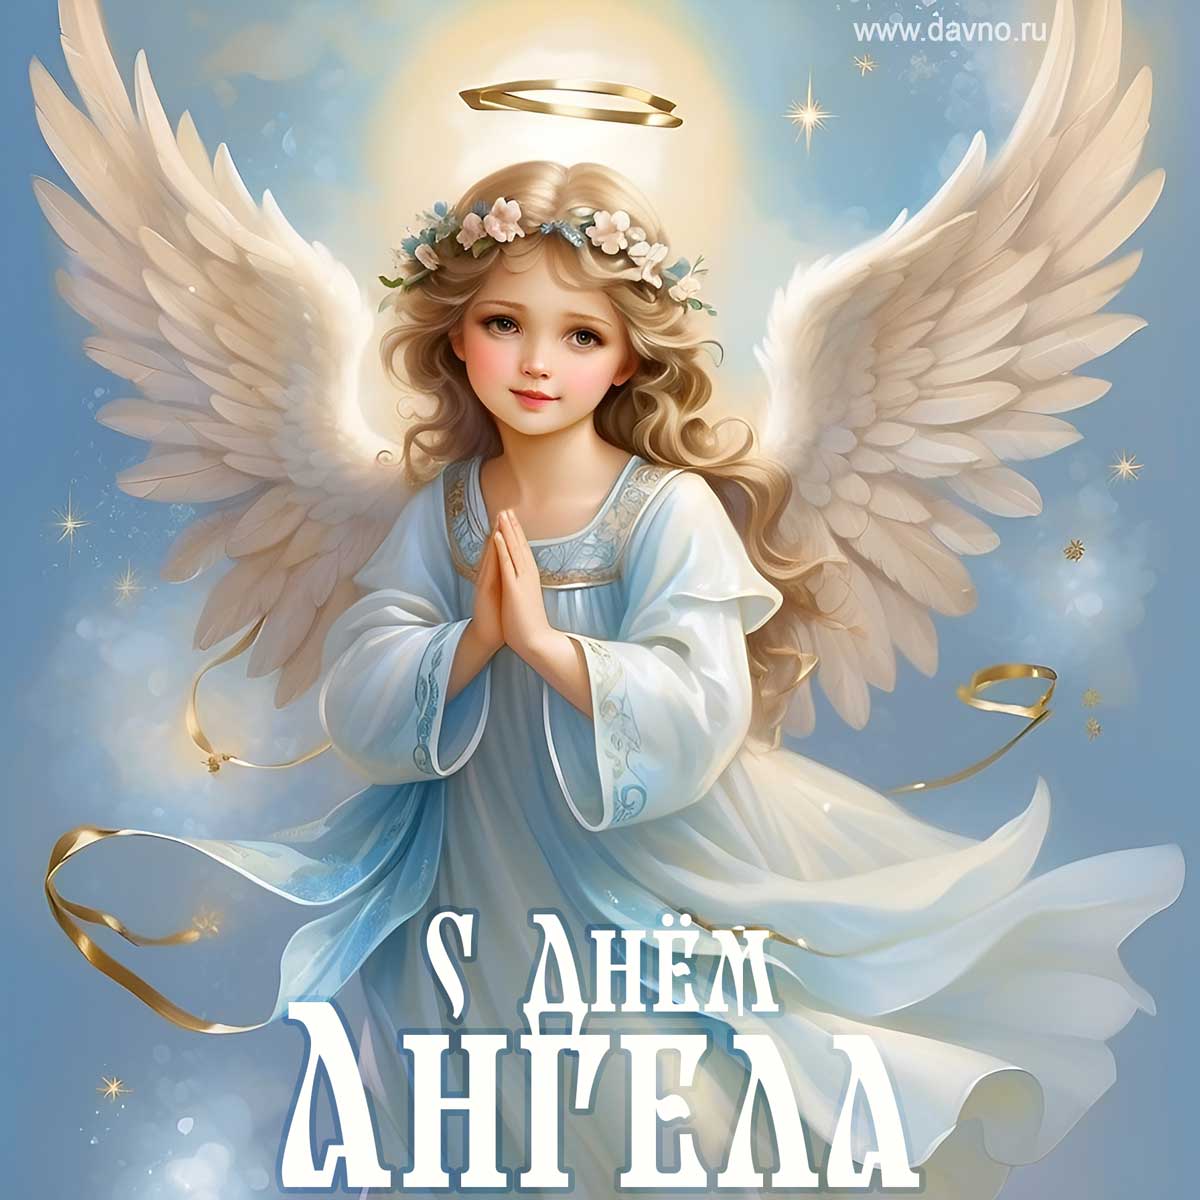 Новая красивая открытка с ангелом